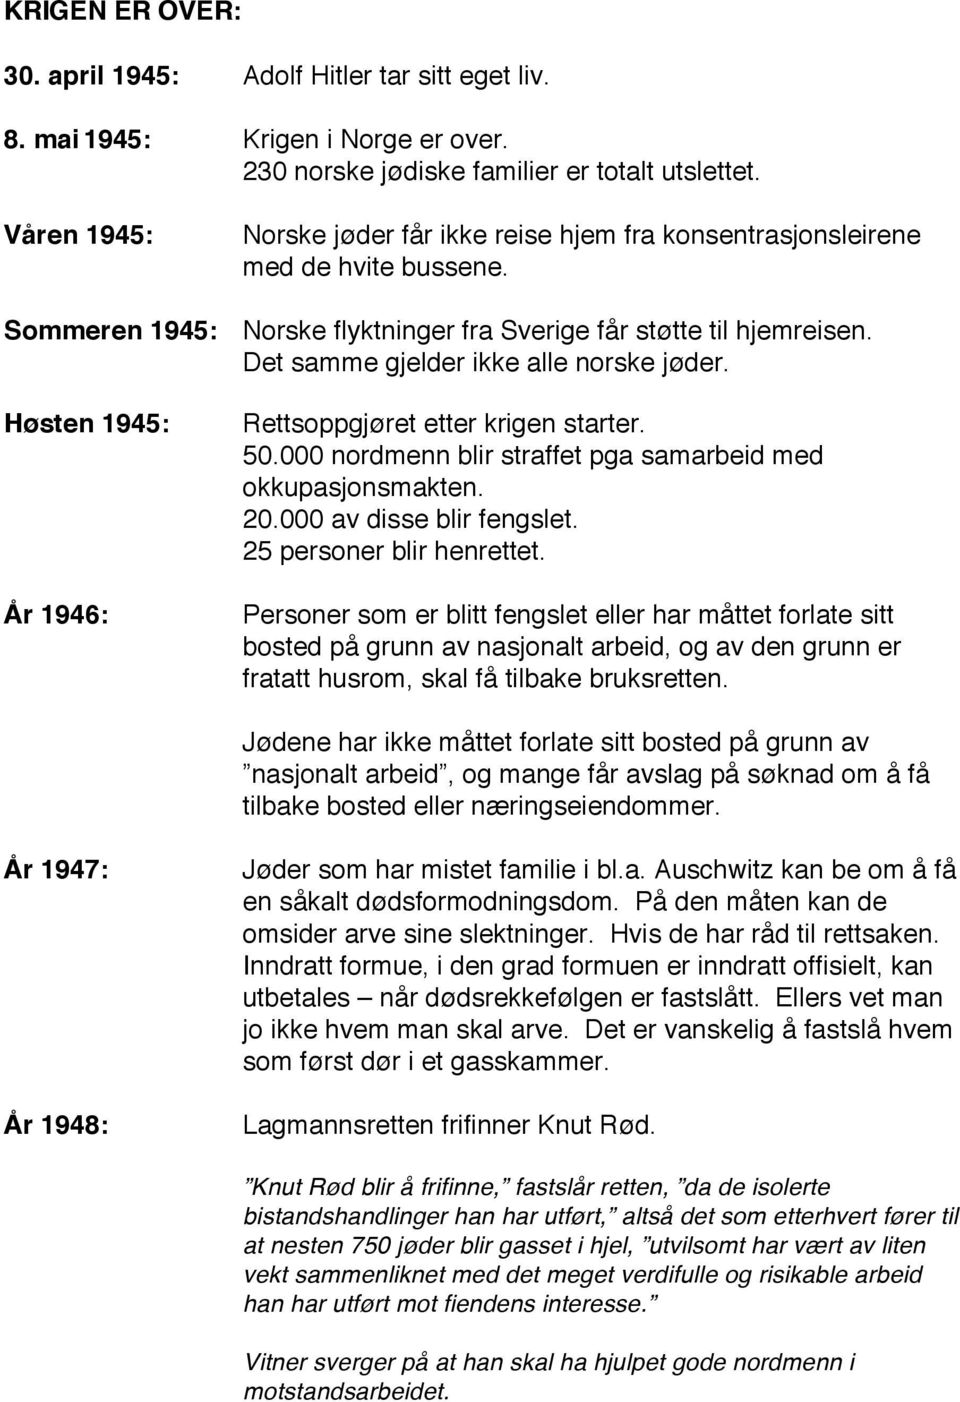 Det samme gjelder ikke alle norske jøder. Høsten 1945: År 1946: Rettsoppgjøret etter krigen starter. 50.000 nordmenn blir straffet pga samarbeid med okkupasjonsmakten. 20.000 av disse blir fengslet.